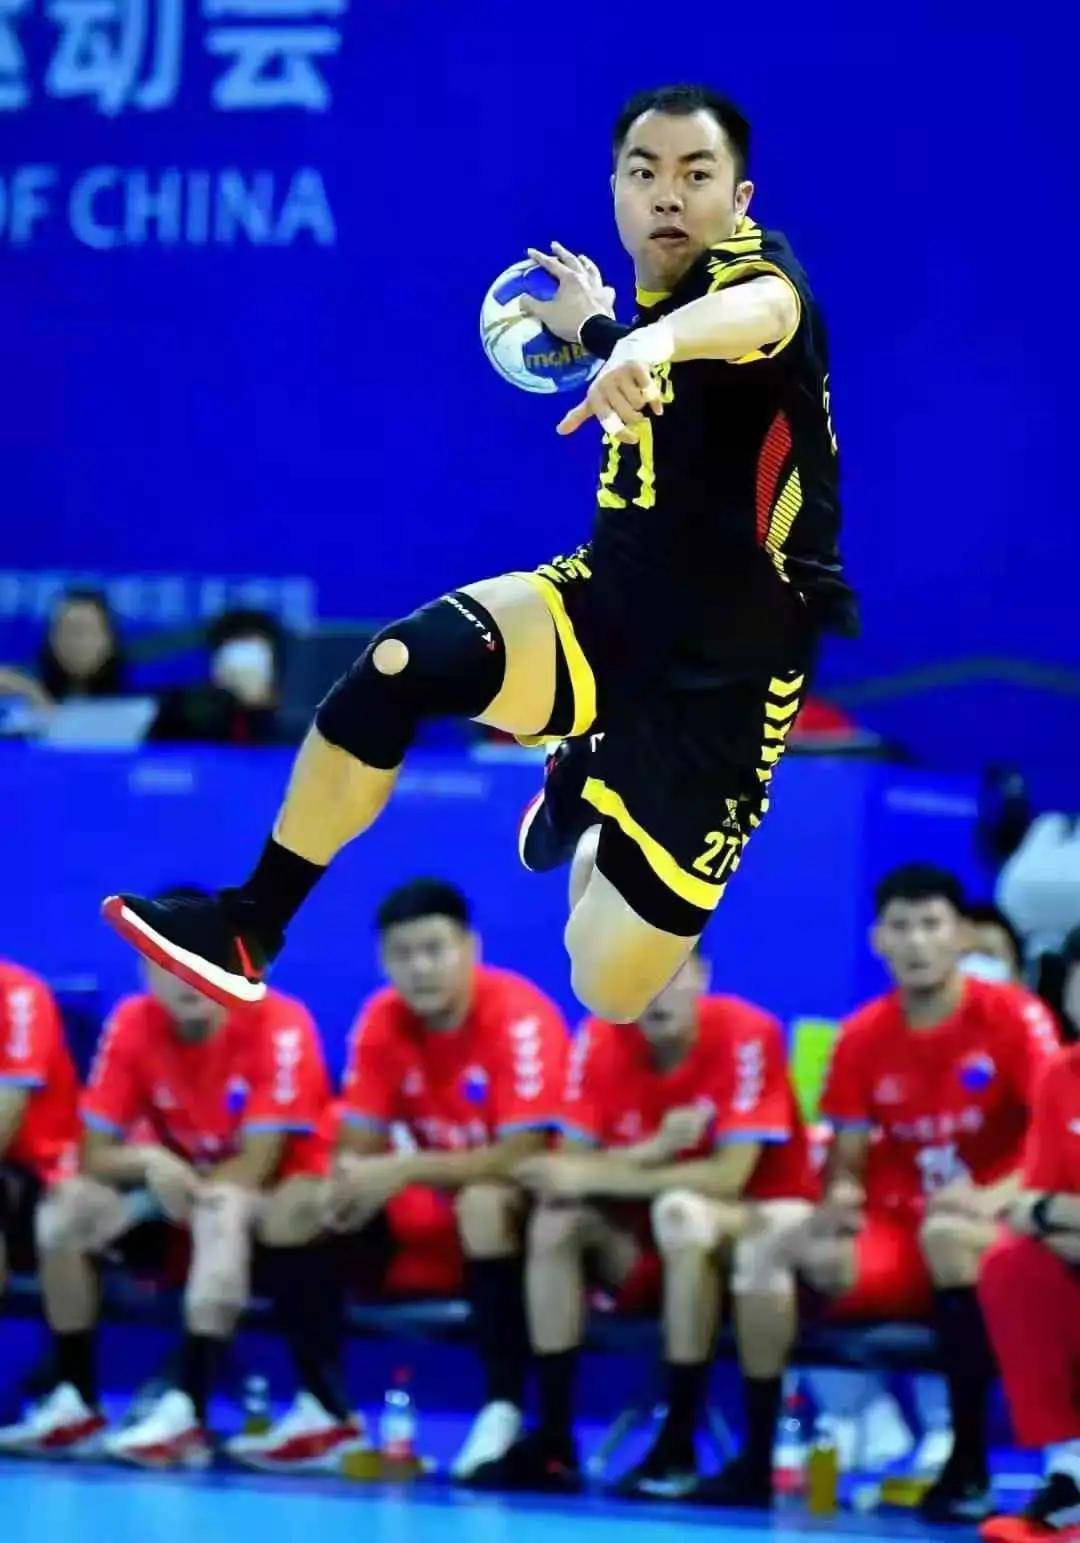 我市运动员王伟强张帅助力江苏队勇夺第十四届全运会男子手球决赛冠军